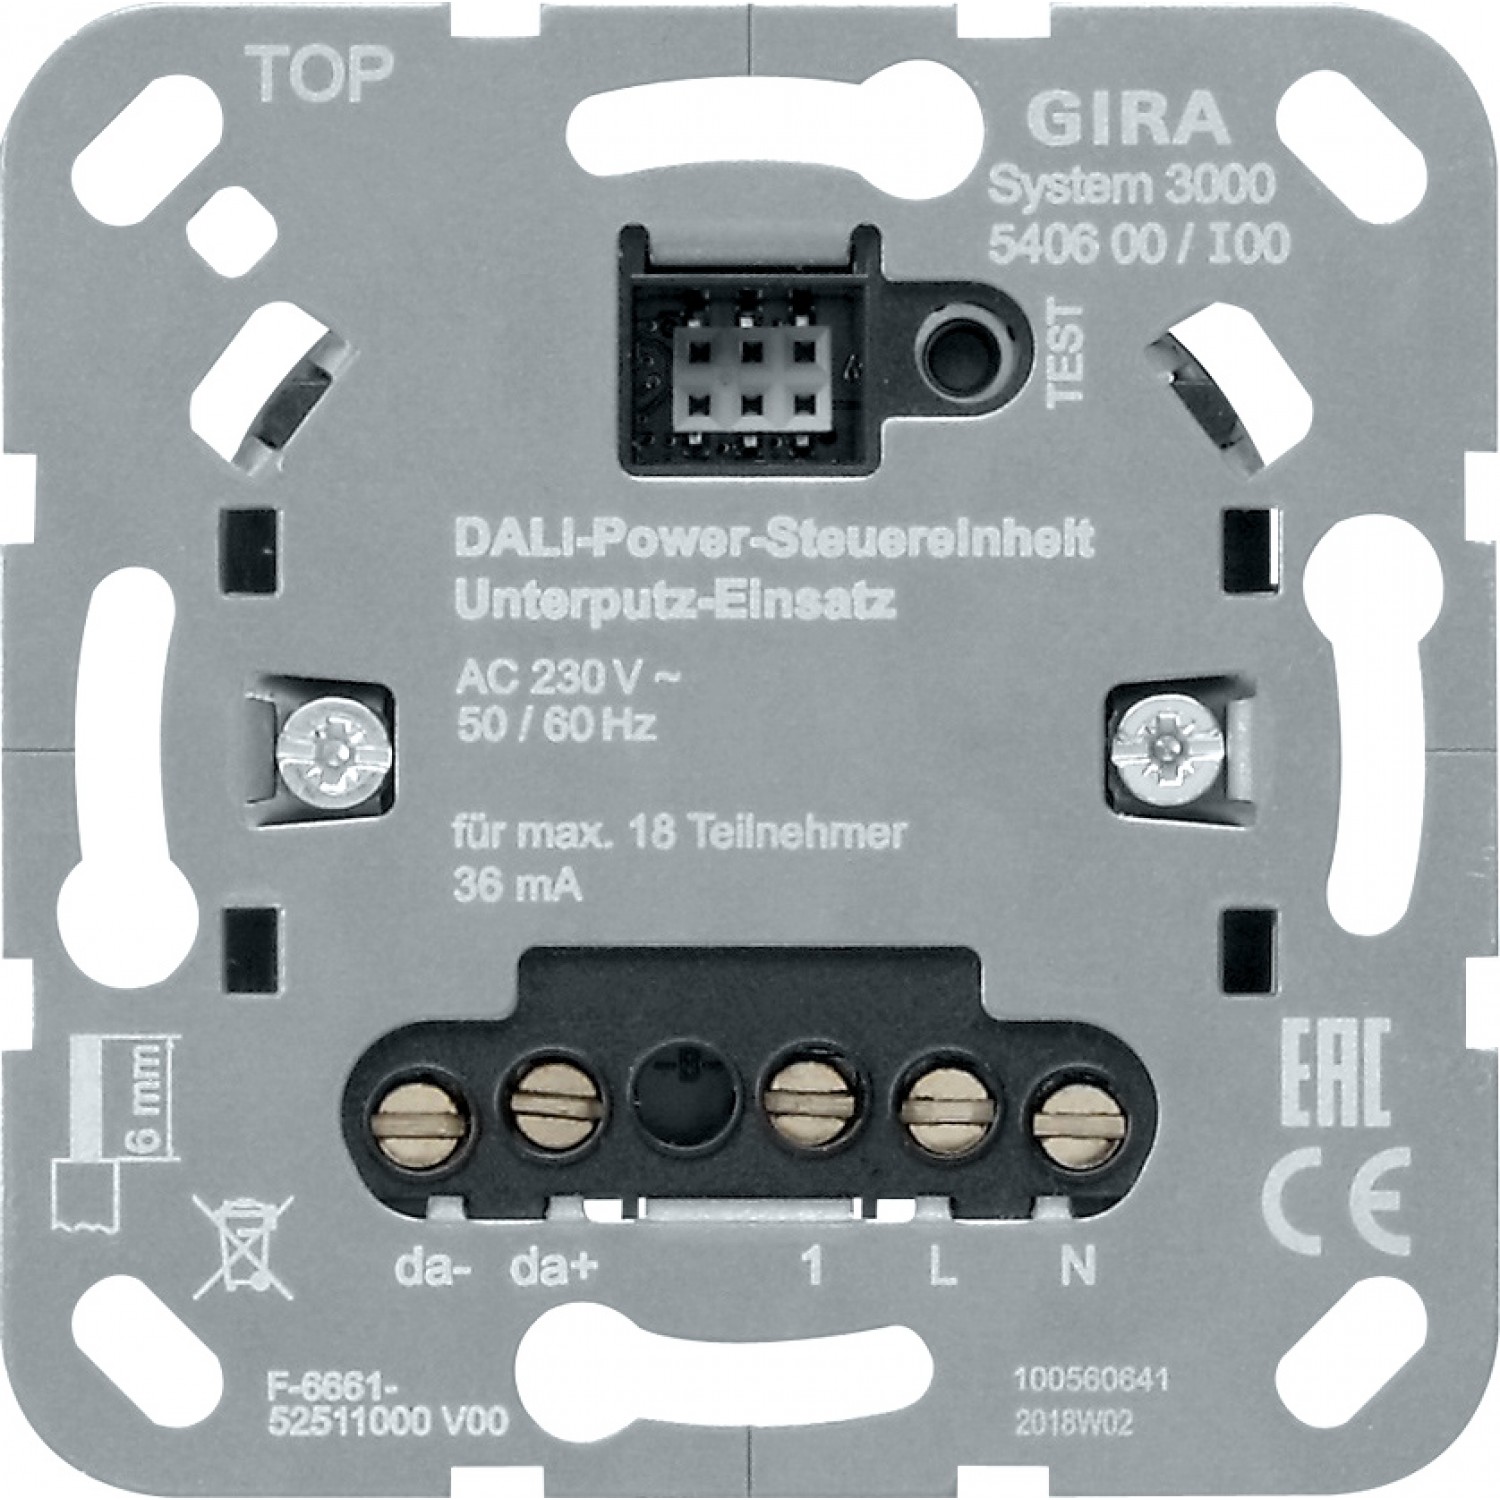 alt_image Электрофурнитура Gira Выключатель (модуль) управления DALI Power S3000, вставка 540600